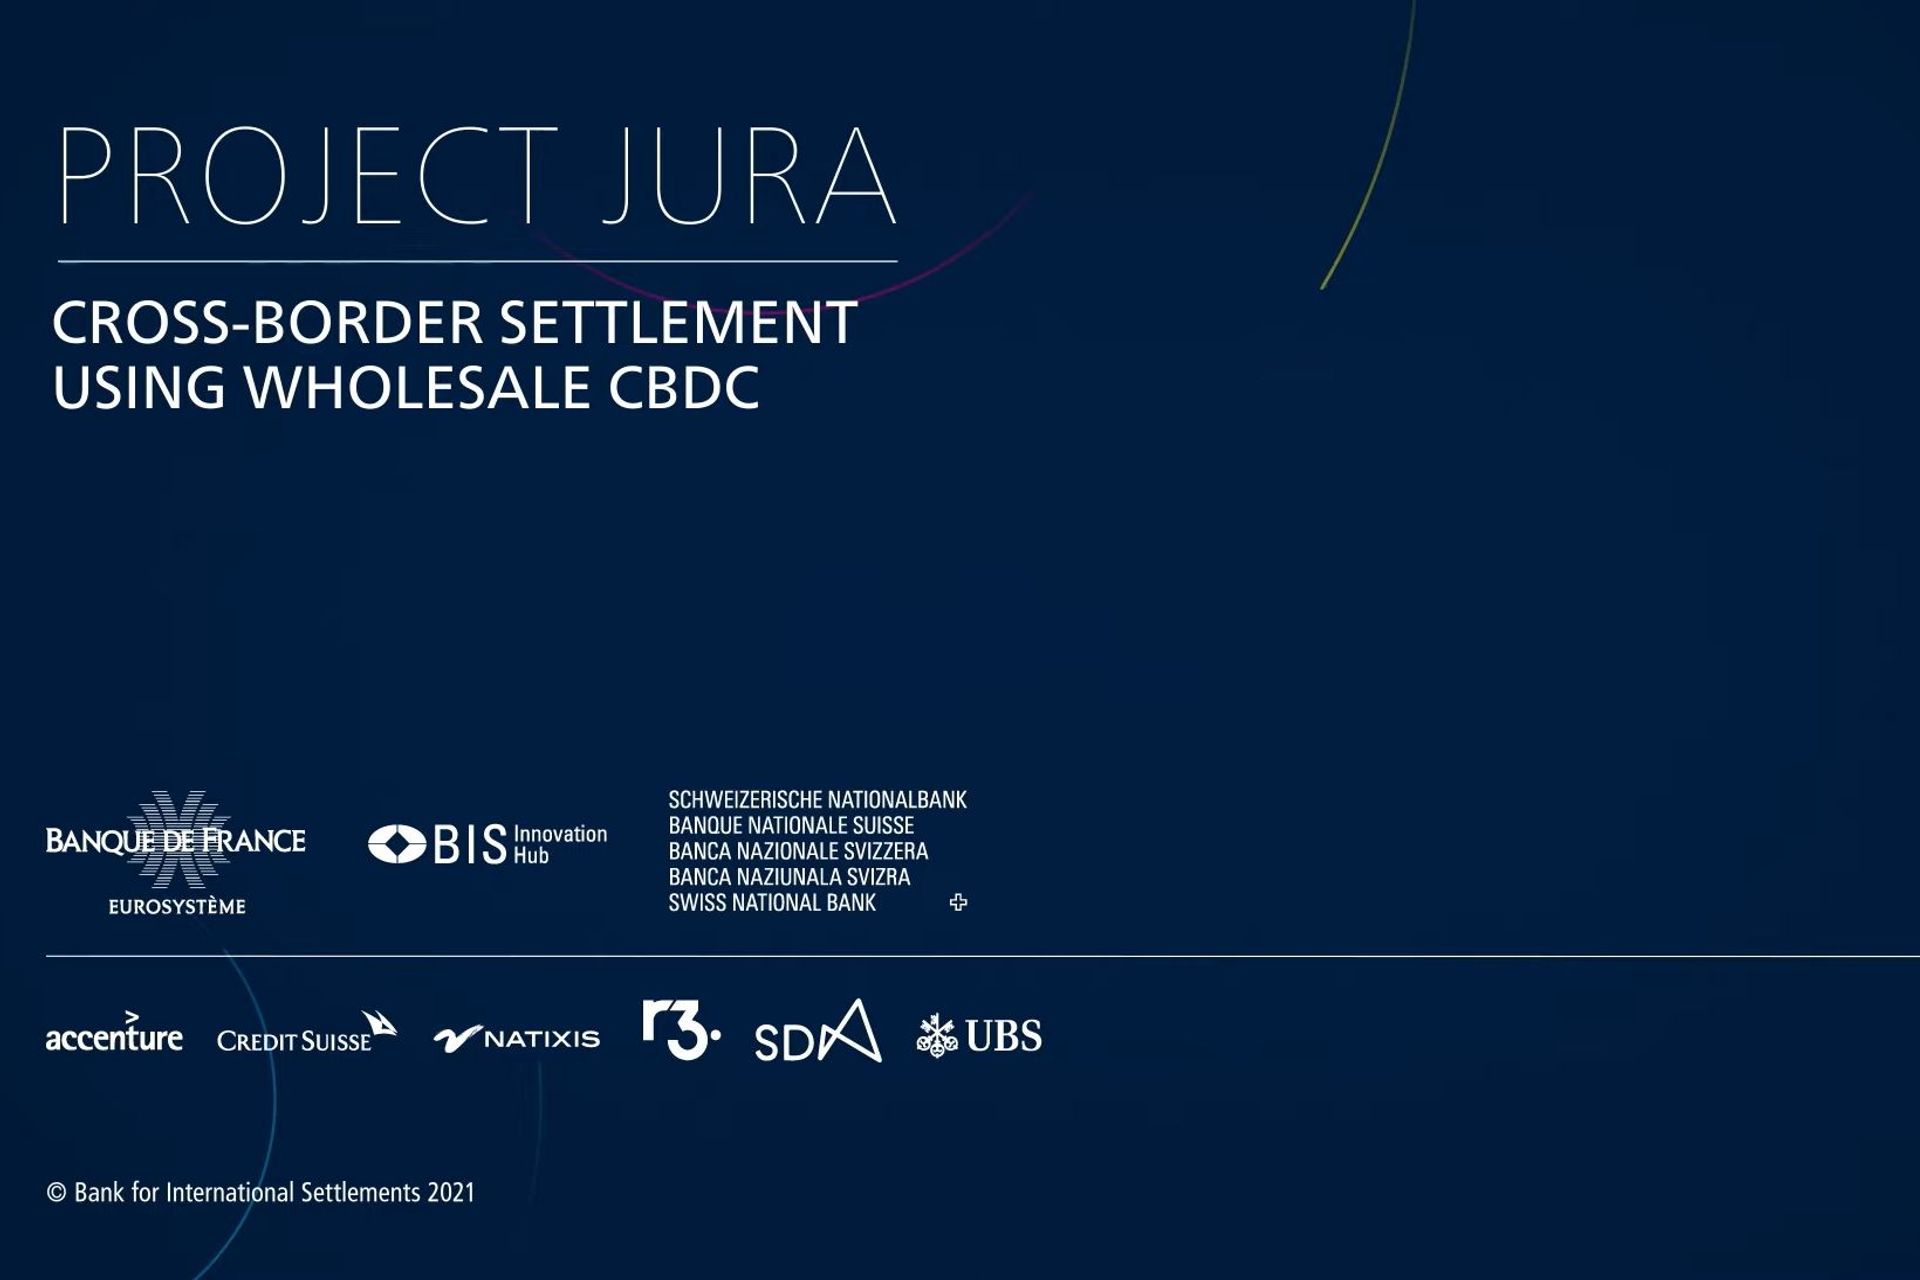 บริษัท คู่ค้า คำอธิบาย และโลโก้ของ "Jura Project"